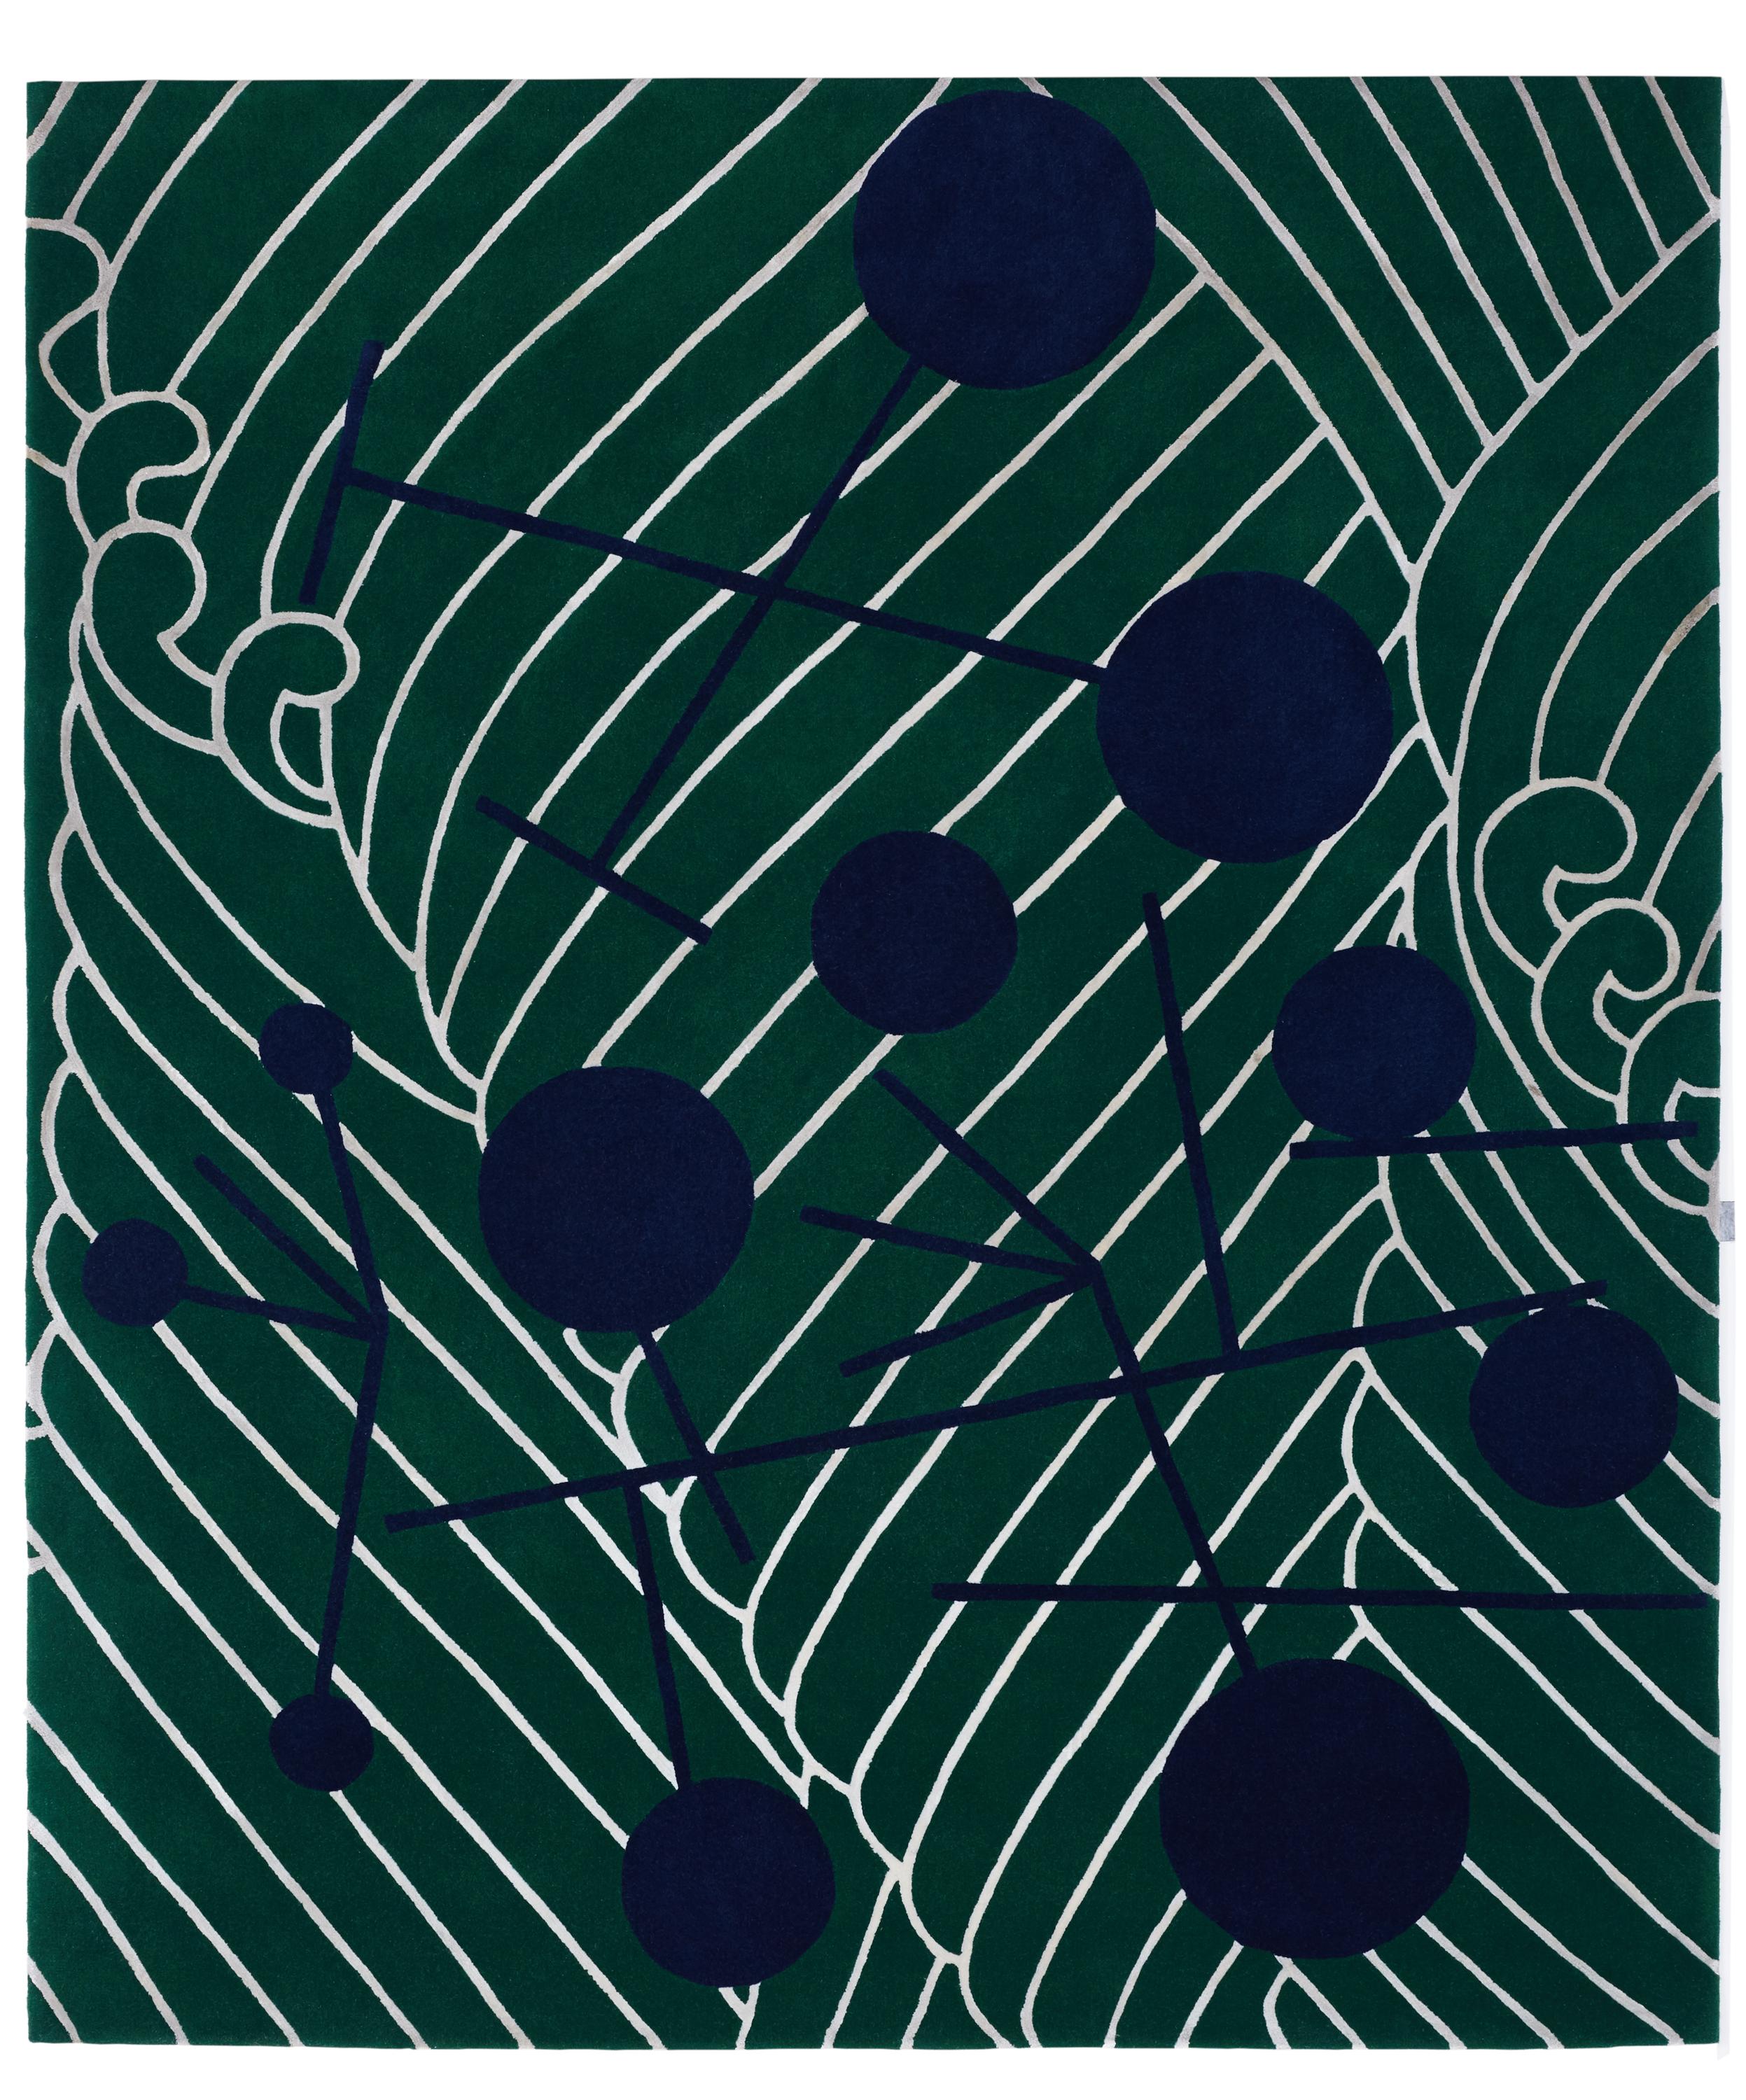 Tapis contemporain abstrait dadaïste inspiré par Sophie Taeuber Arp
Artistics : Sophie Taeuber Arp
Dimensions : L 170, P 240 cm
Laine et soie de Nouvelle-Zélande

Japanese Abstractions est une collection de neuf pièces, toutes conçues autour du